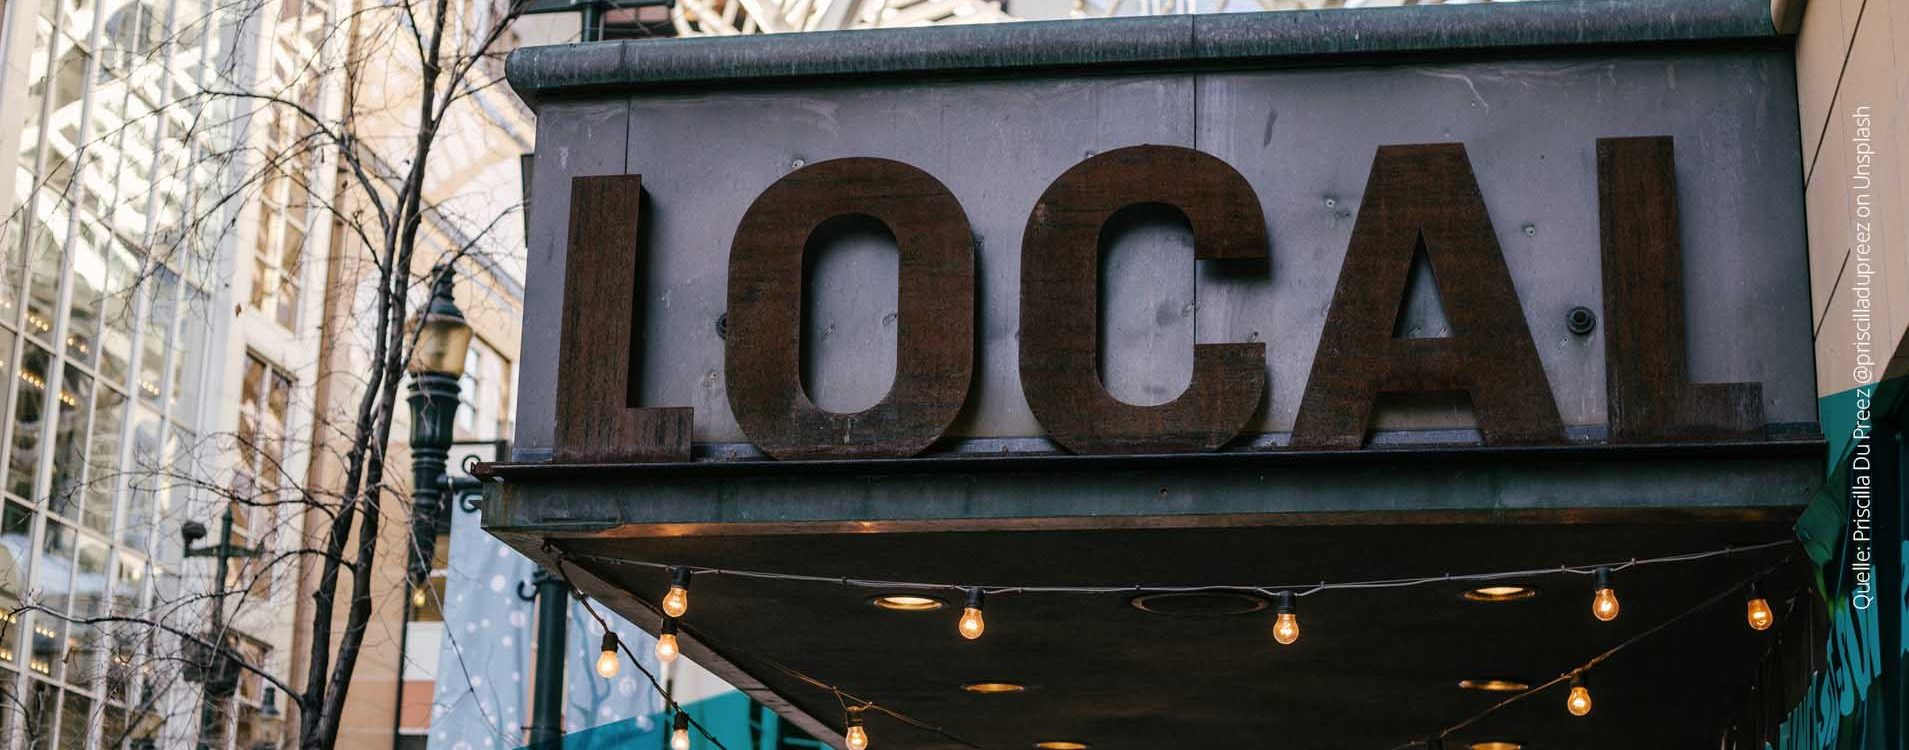 Großes Schild, auf dem das Wort "Local" geschrieben steht